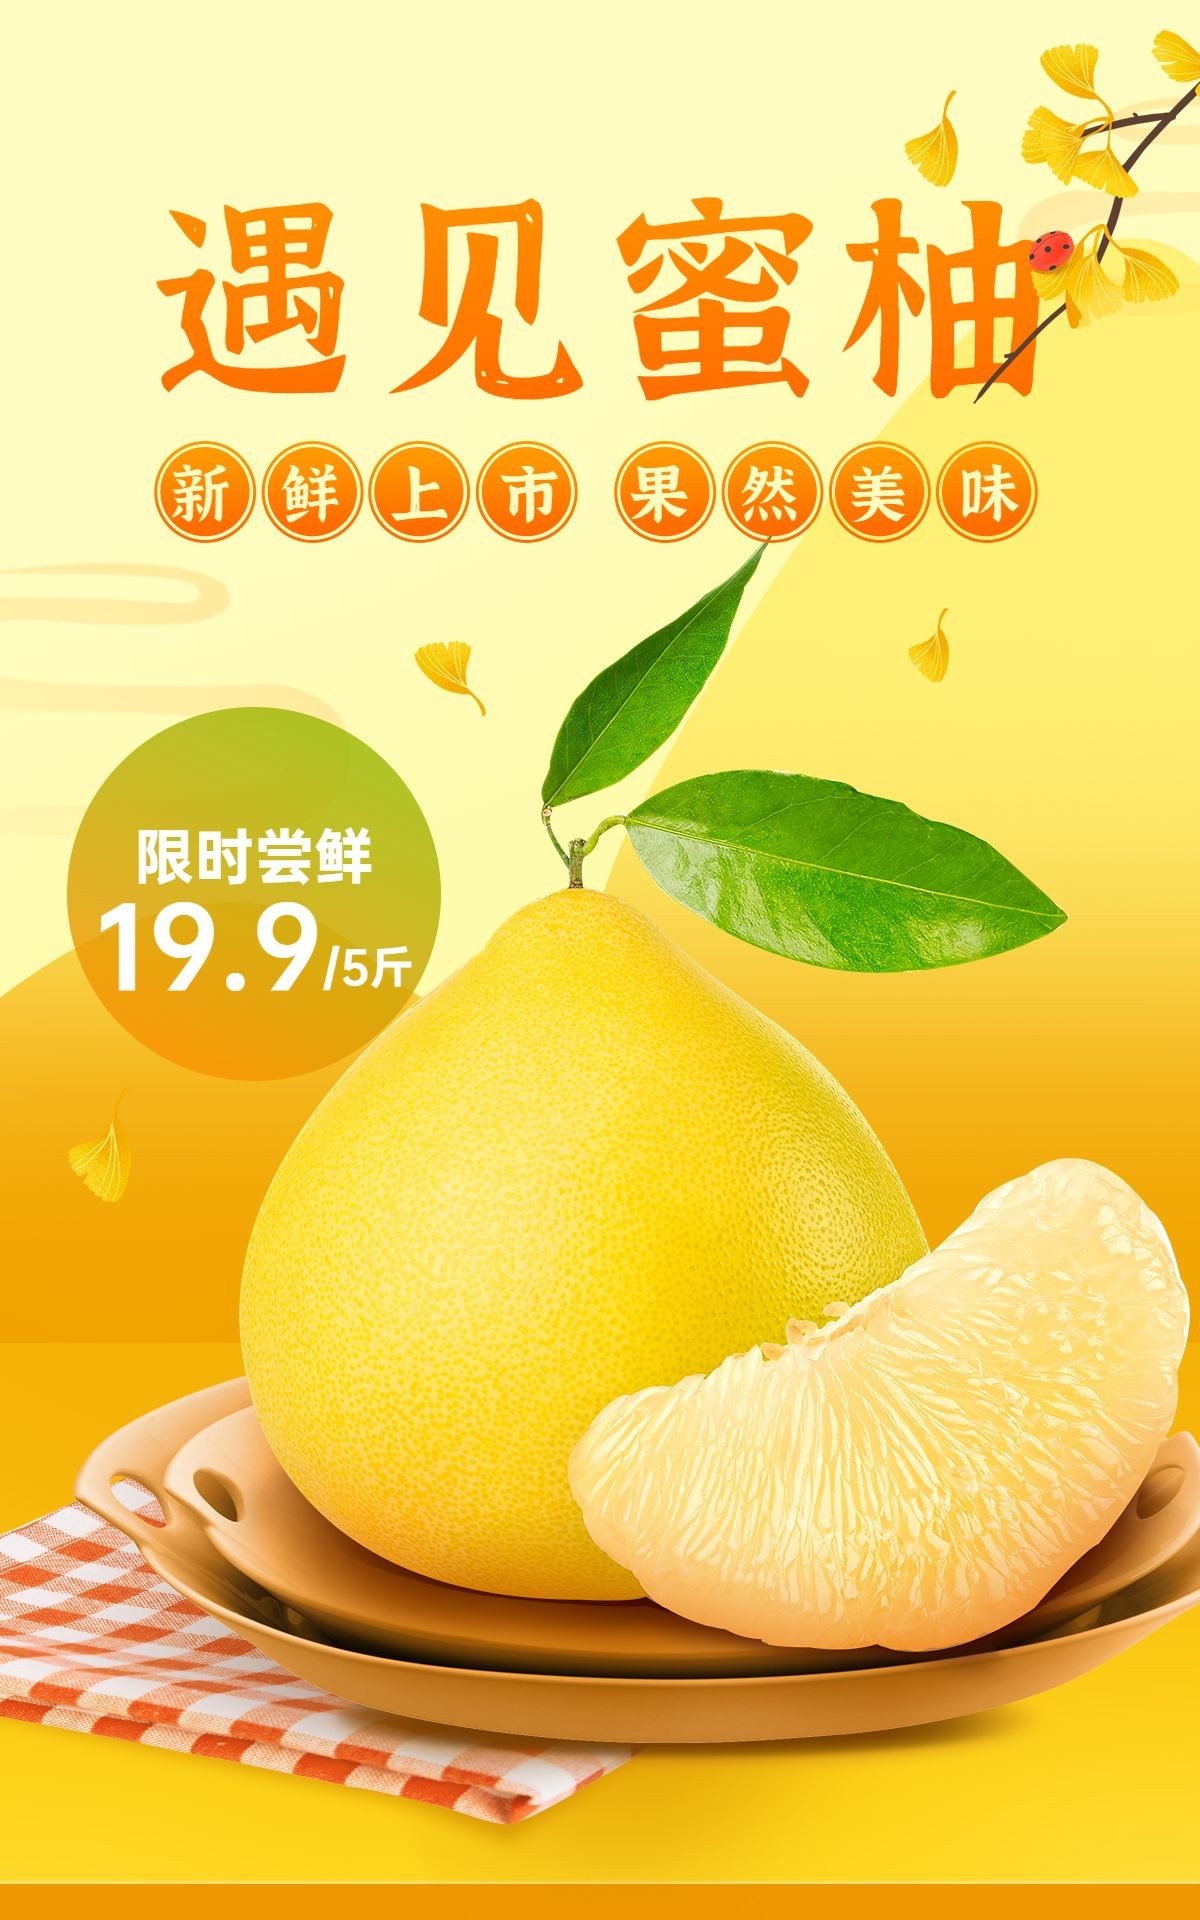 生鲜食品水果柚子海报预览效果